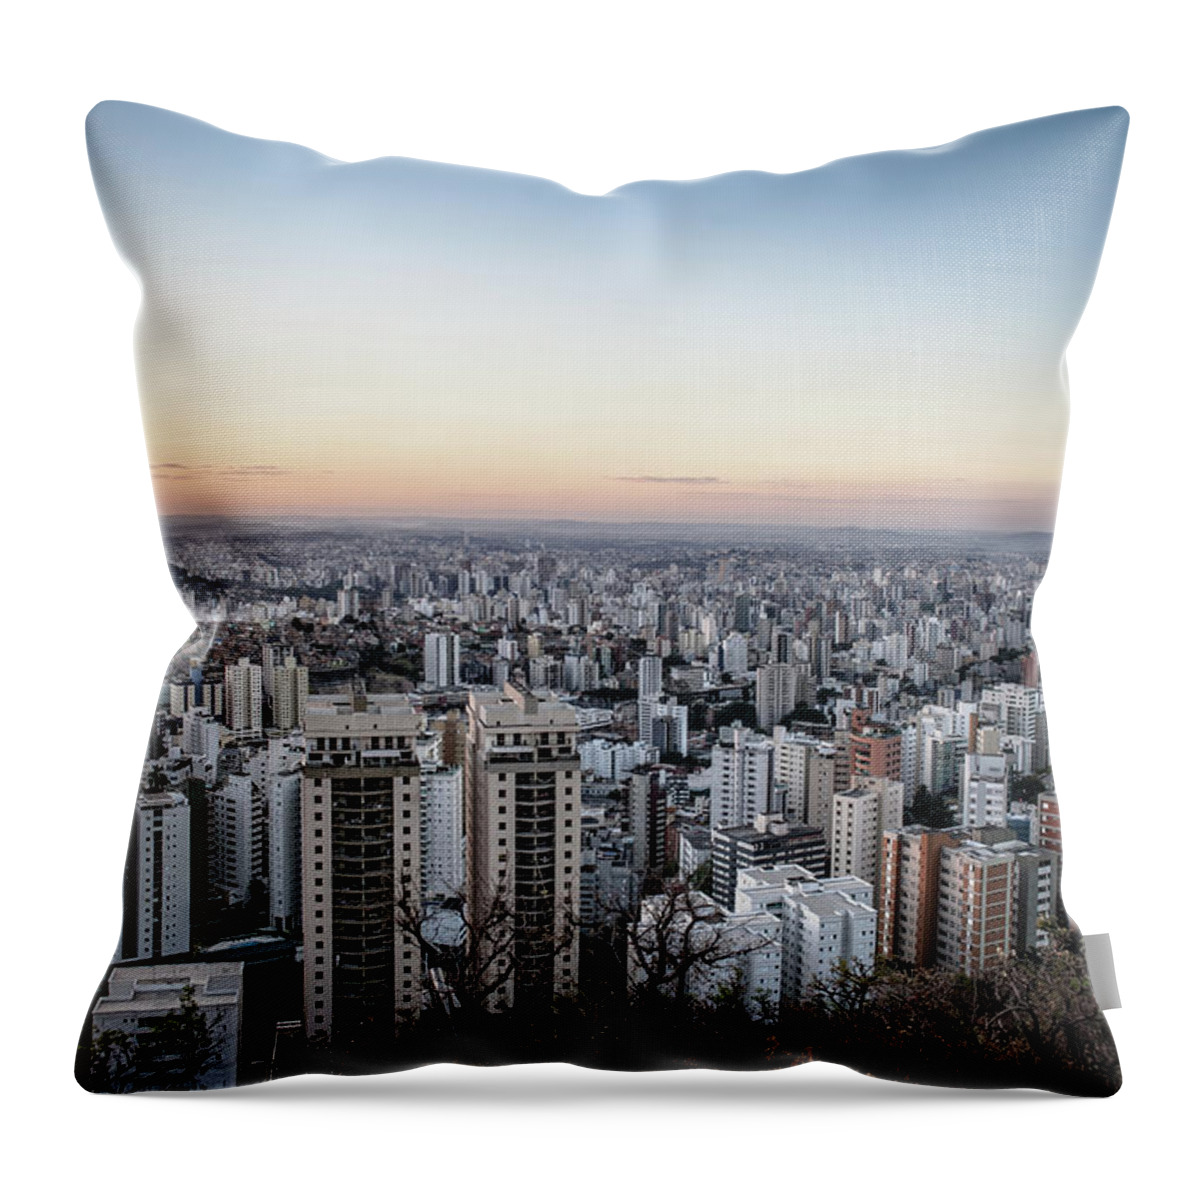 Tranquility Throw Pillow featuring the photograph Belo Horizonte by Becreative At Werkeschaffen.de